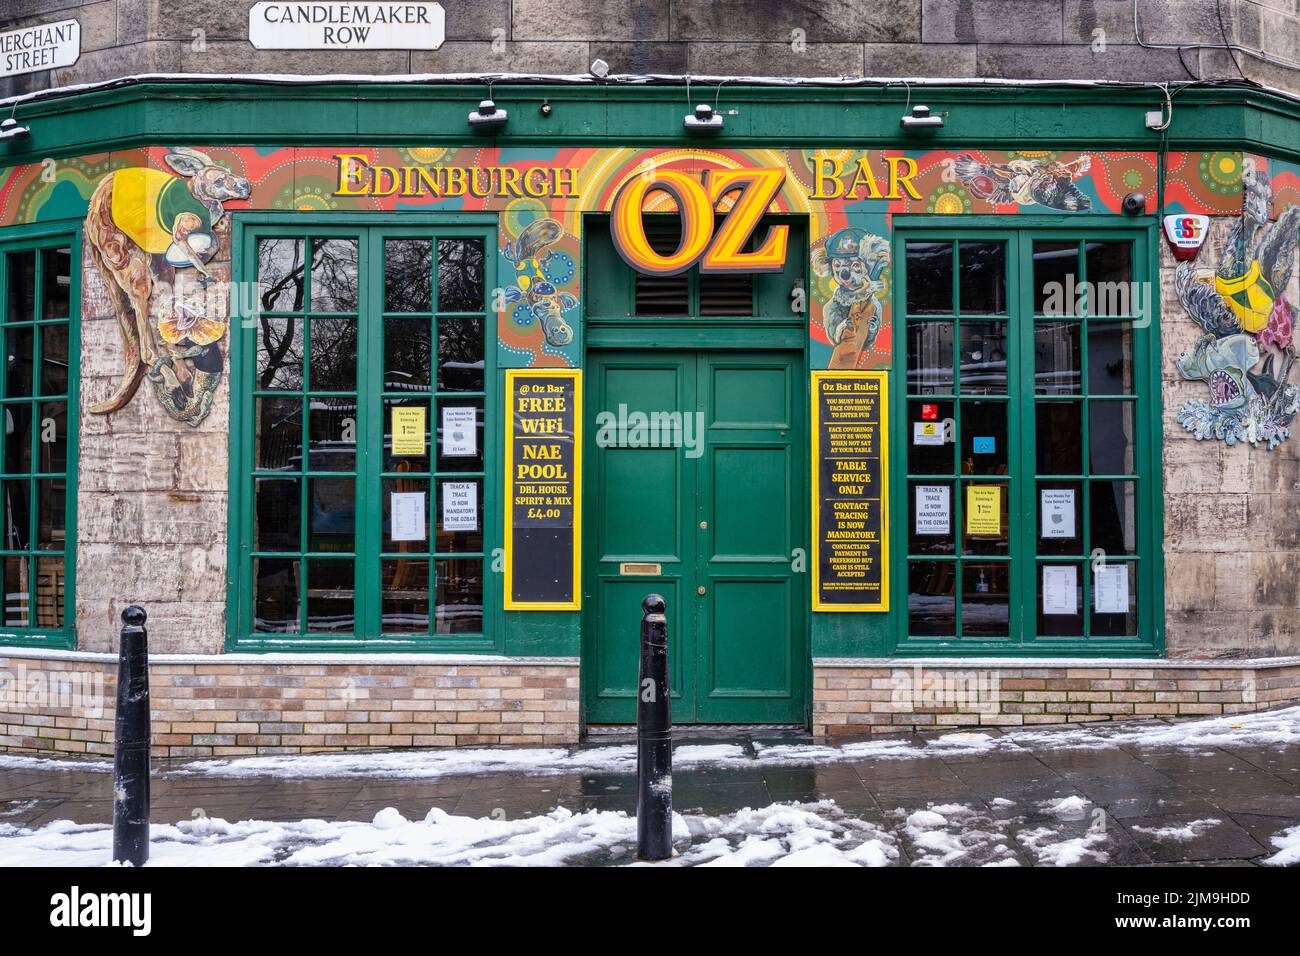 Edinburgh Oz Bar in Snow, Candlemaker Row, Edinburgh, Schottland, Großbritannien Stockfoto